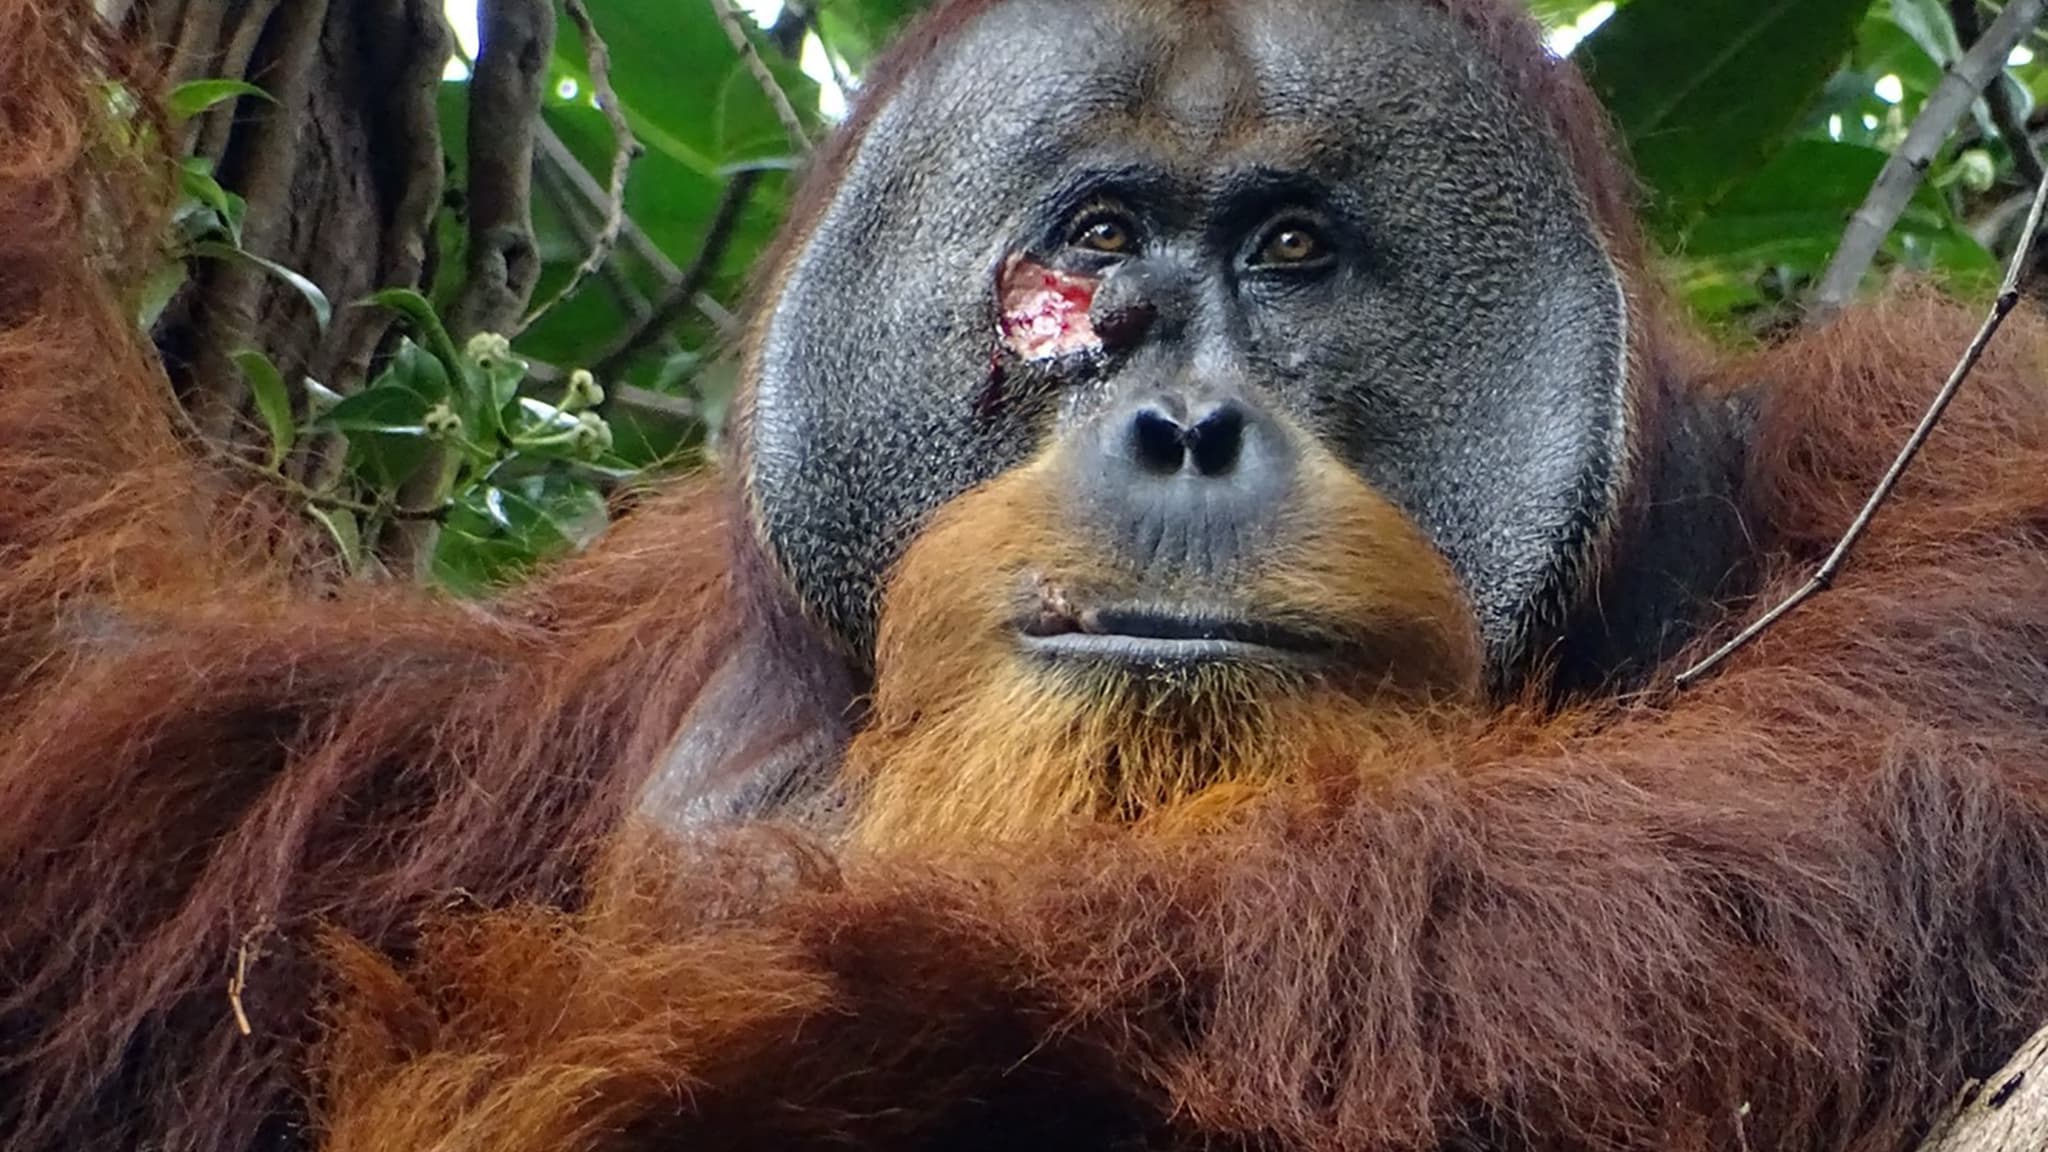 Blessé, un orang-outang se fait un pansement à l'aide de plantes médicinales, une première